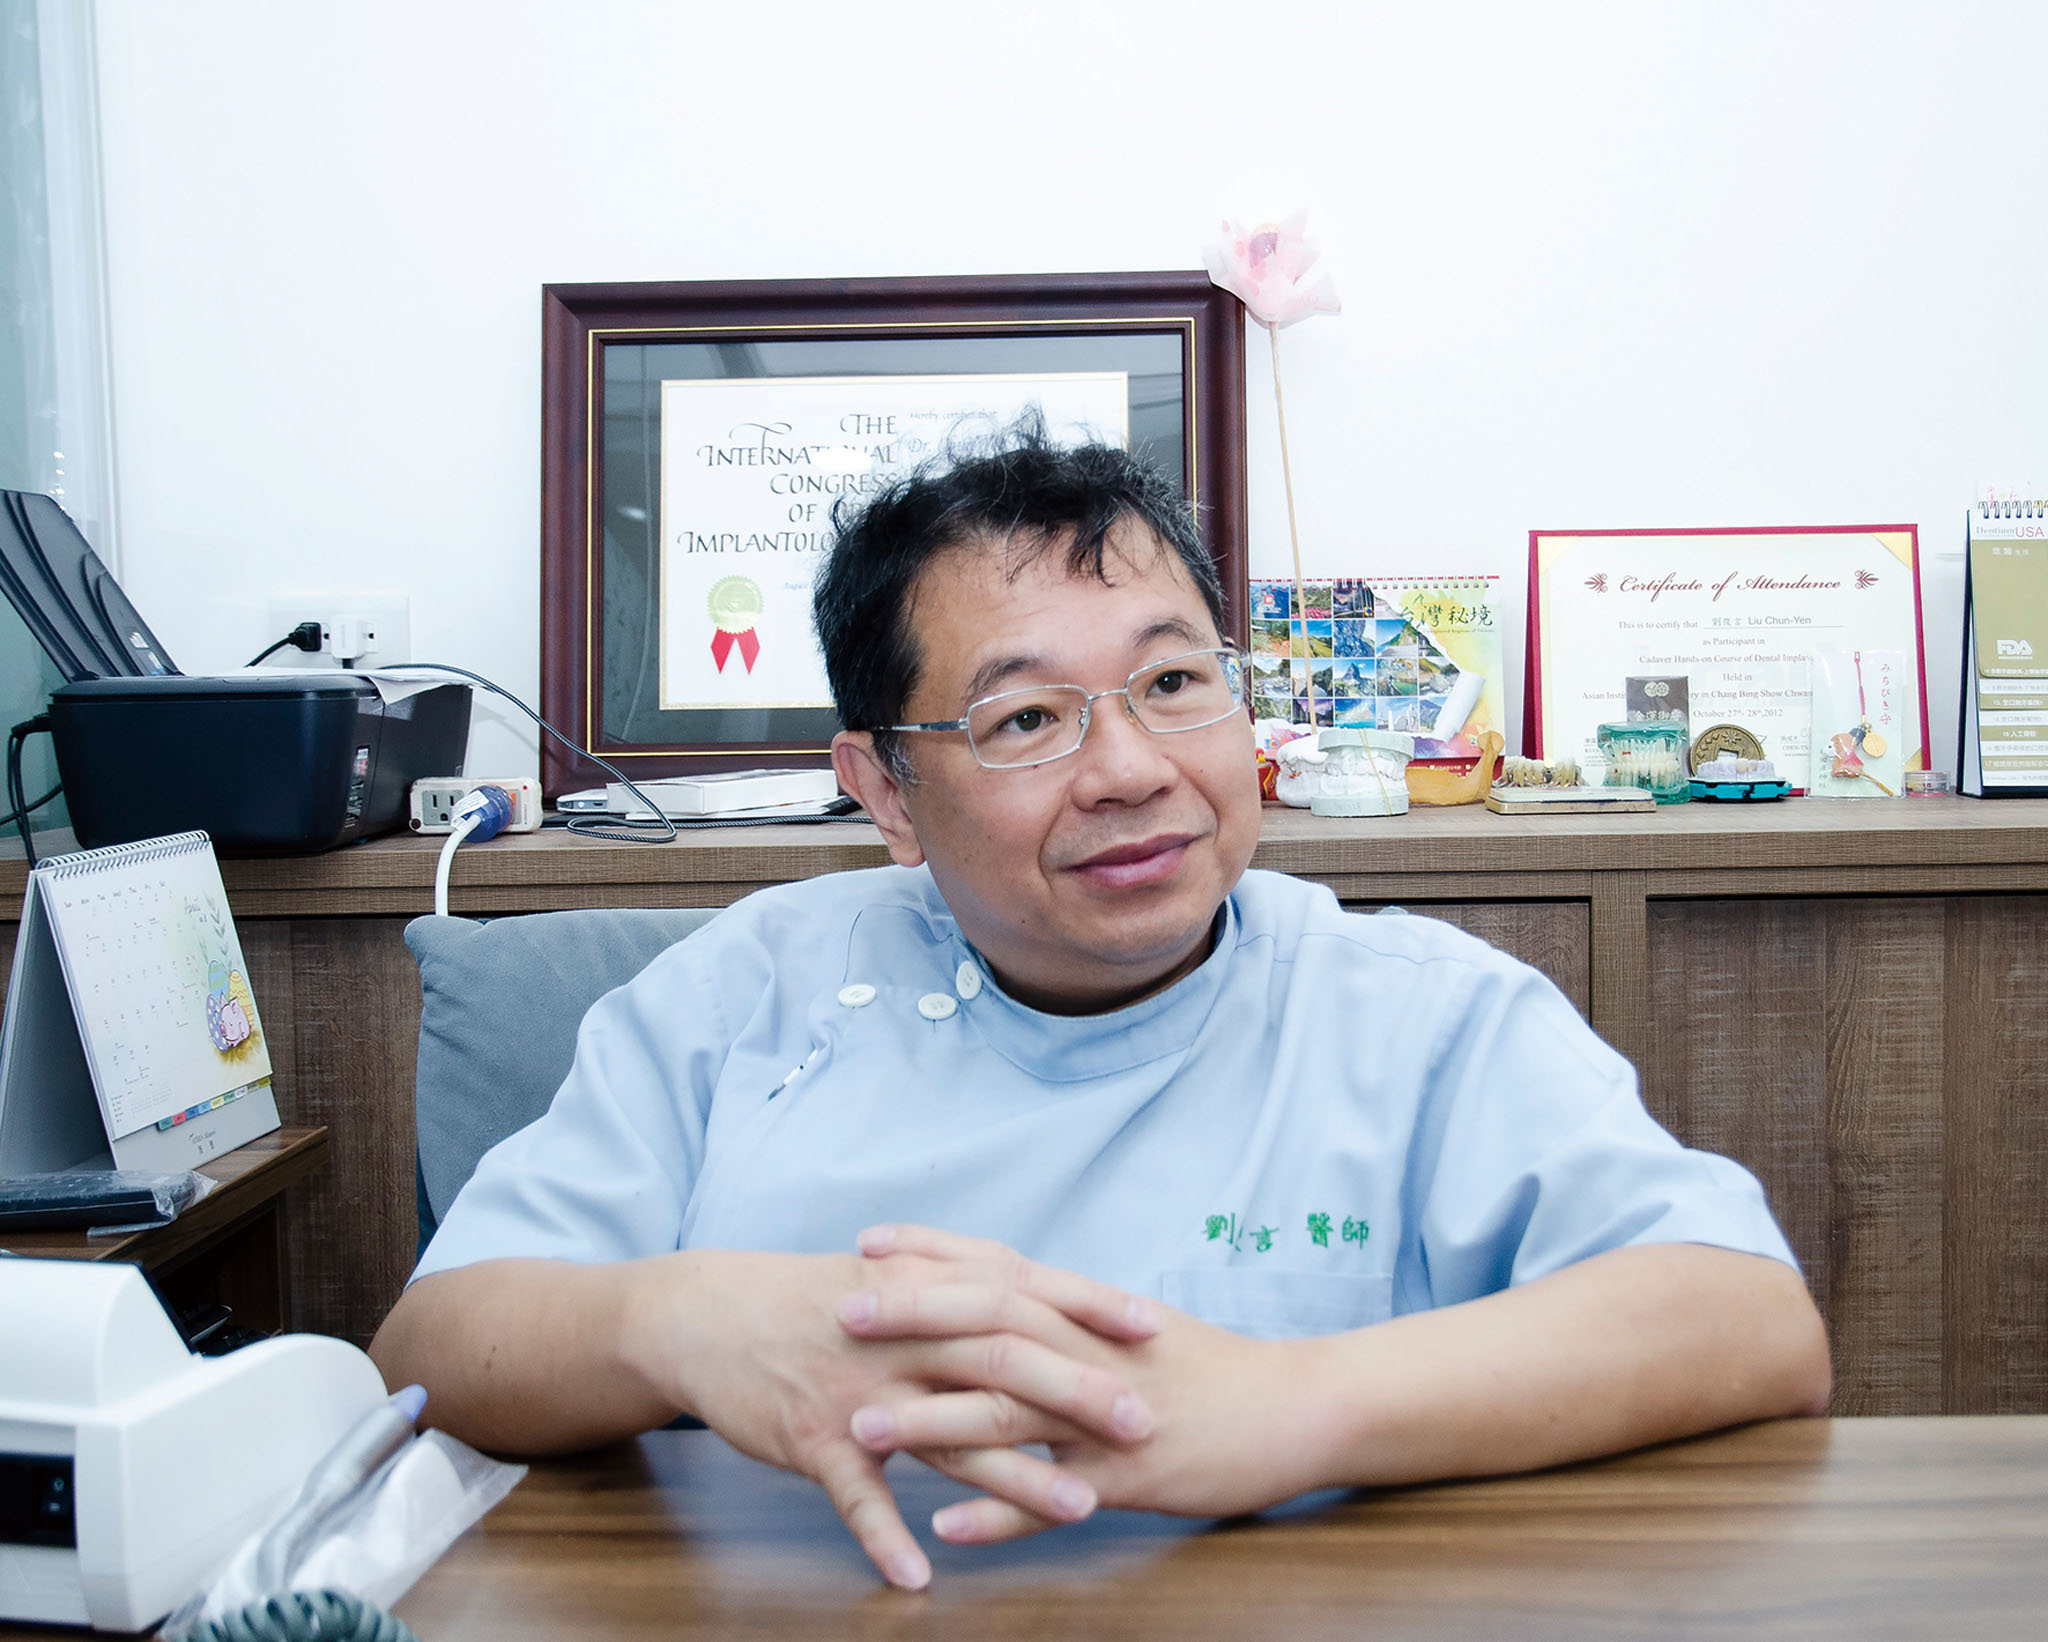 嘉銳牙醫診所院長劉俊言醫師暢談口腔衛生的重要性。